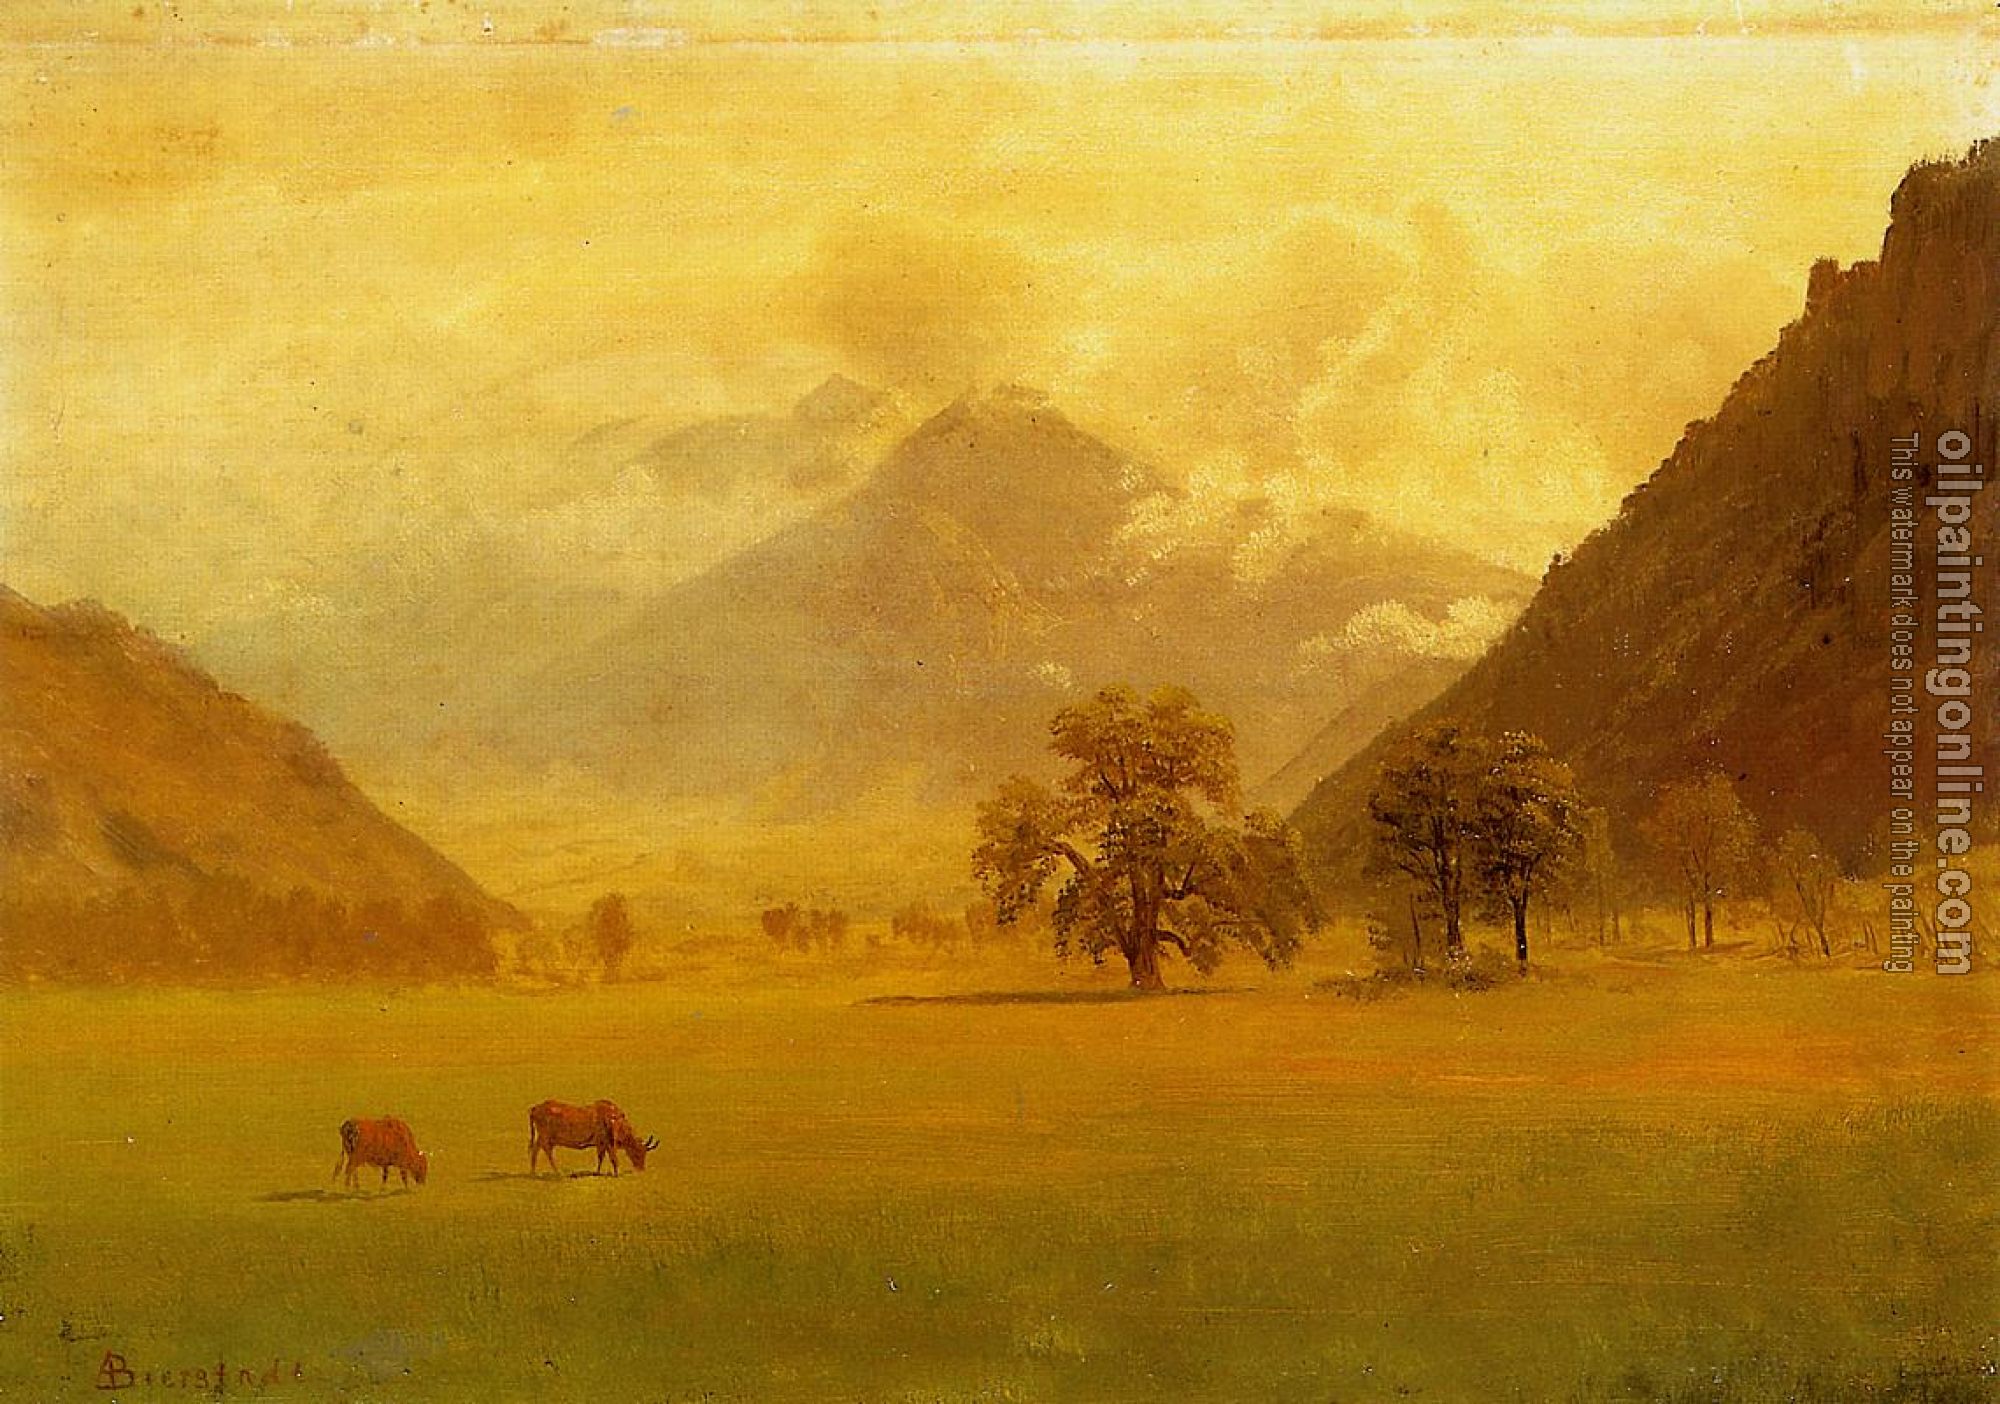 Bierstadt, Albert - Rhone Valley